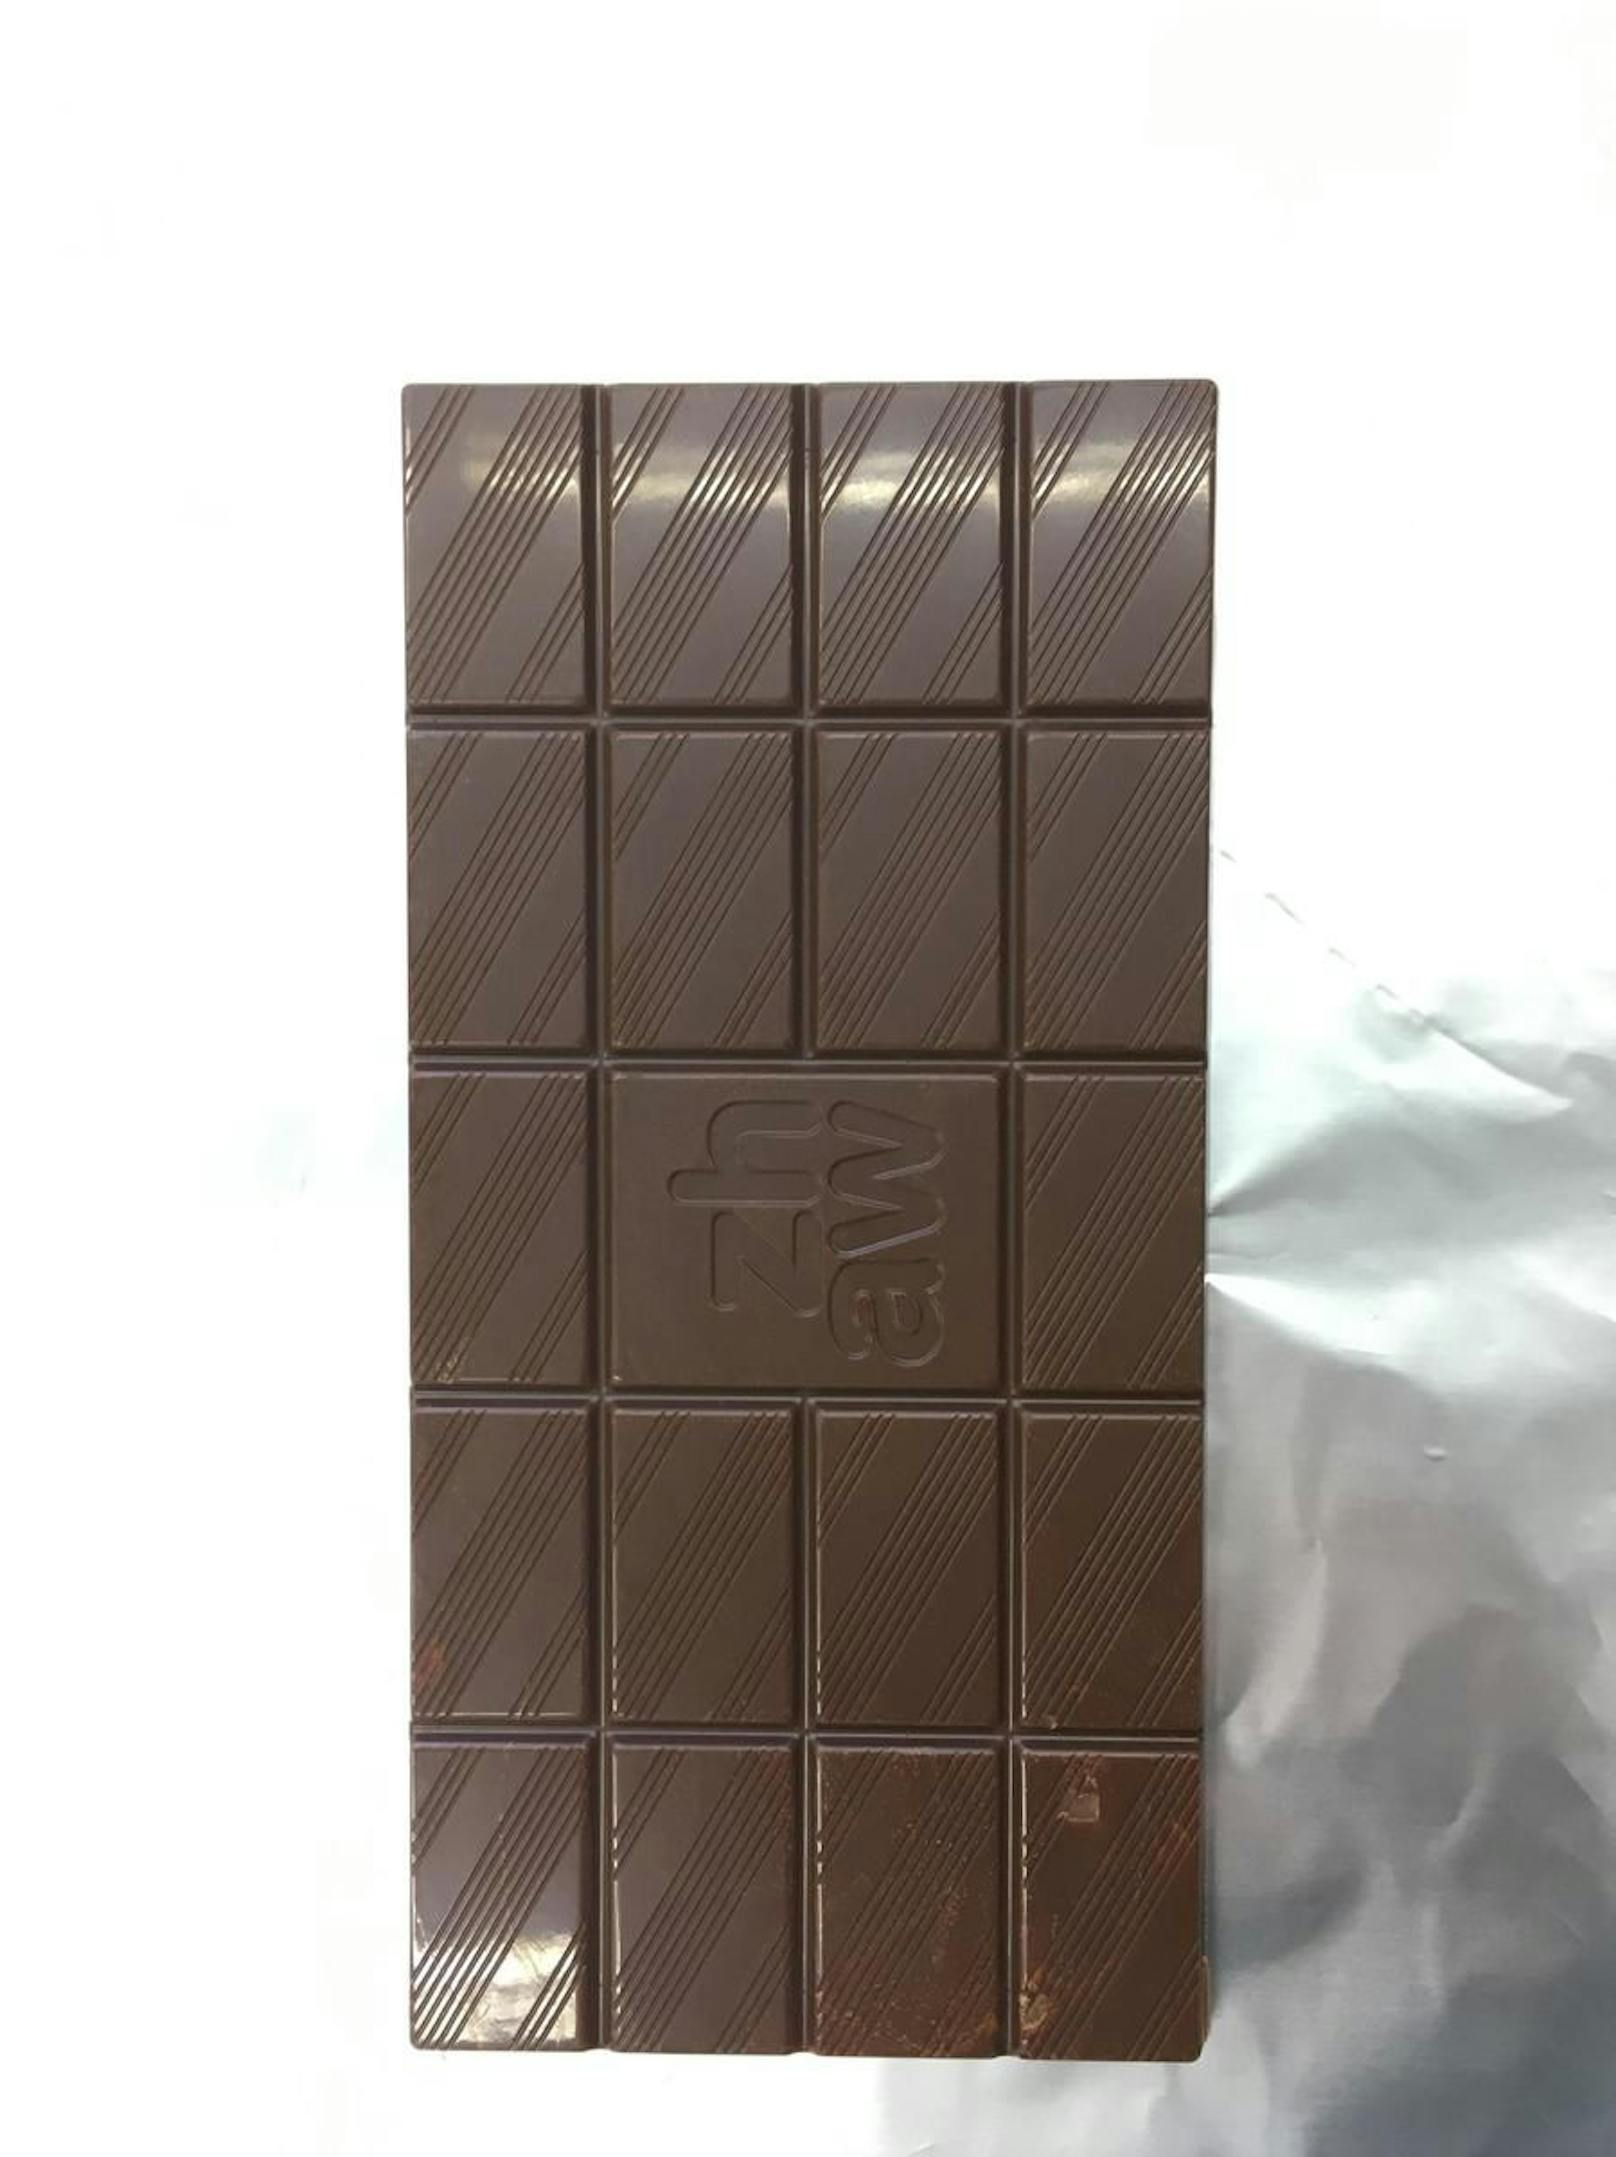 So sieht die Schokolade am Schluss aus.